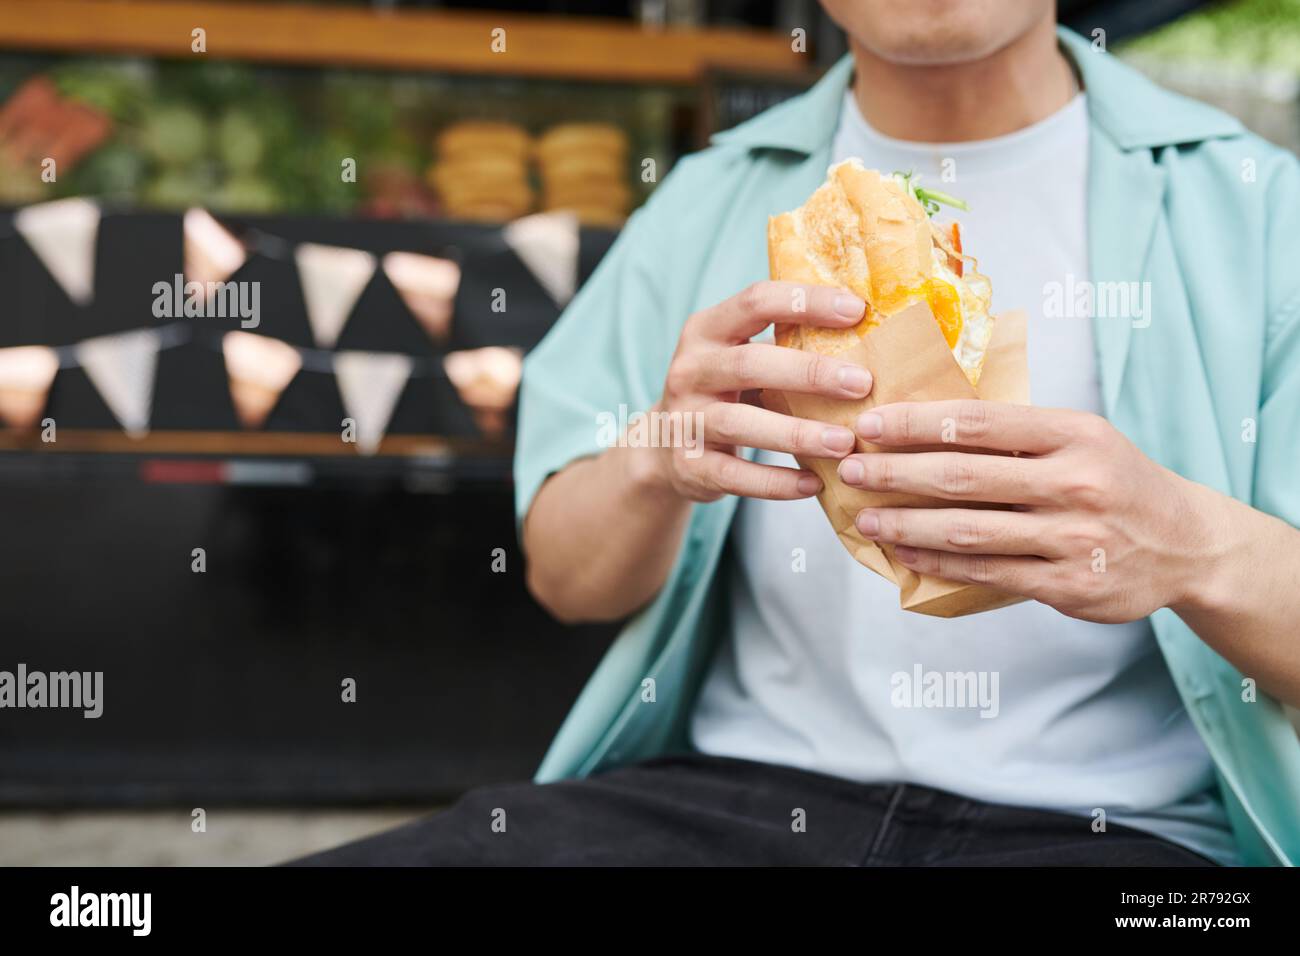 Nahaufnahme eines jungen hungrigen Mannes in Freizeitkleidung, der einen appetitlichen Hotdog in Papier hält, während er vor der Kamera gegen einen Street Food Truck steht Stockfoto